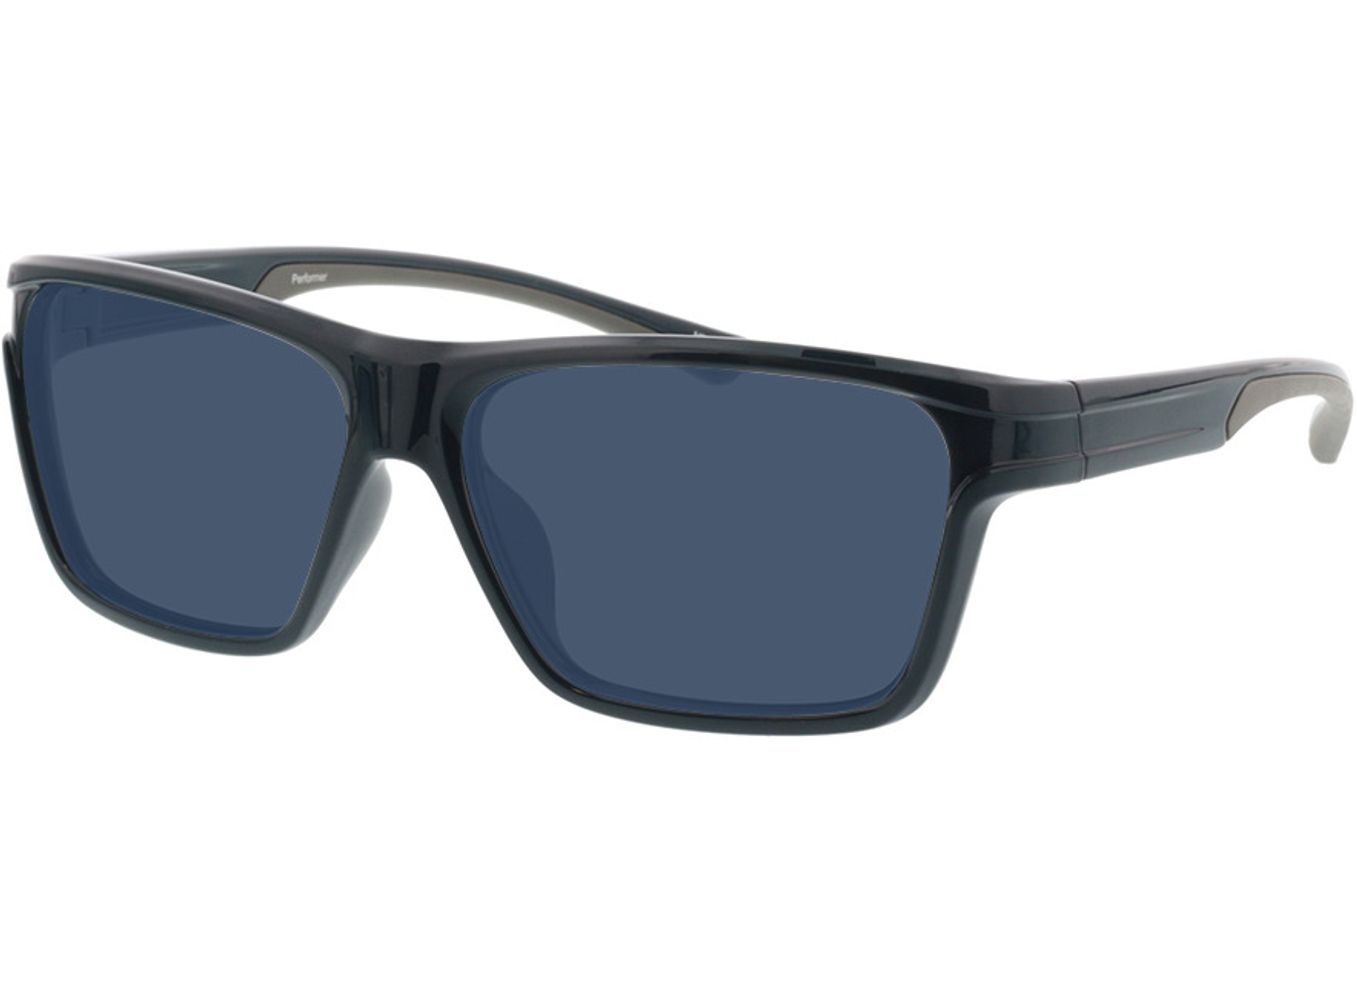 Performer - dunkelblau/grau Sonnenbrille ohne Sehstärke, Vollrand, Rechteckig von Active by Brille24